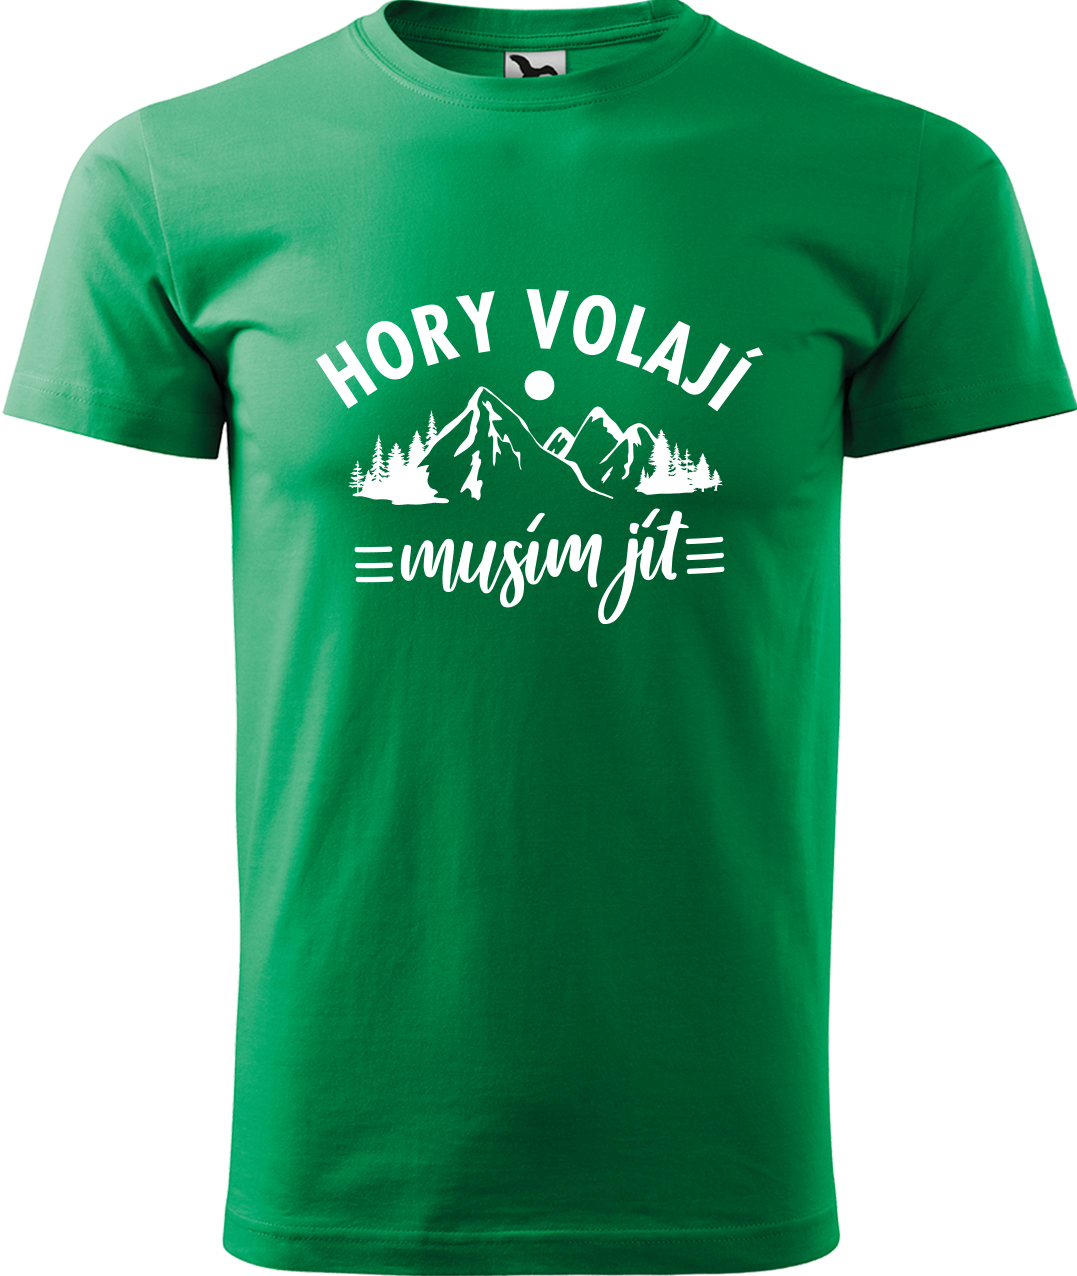 Pánské tričko na hory - Hory volají, musím jít Velikost: XL, Barva: Středně zelená (16), Střih: pánský